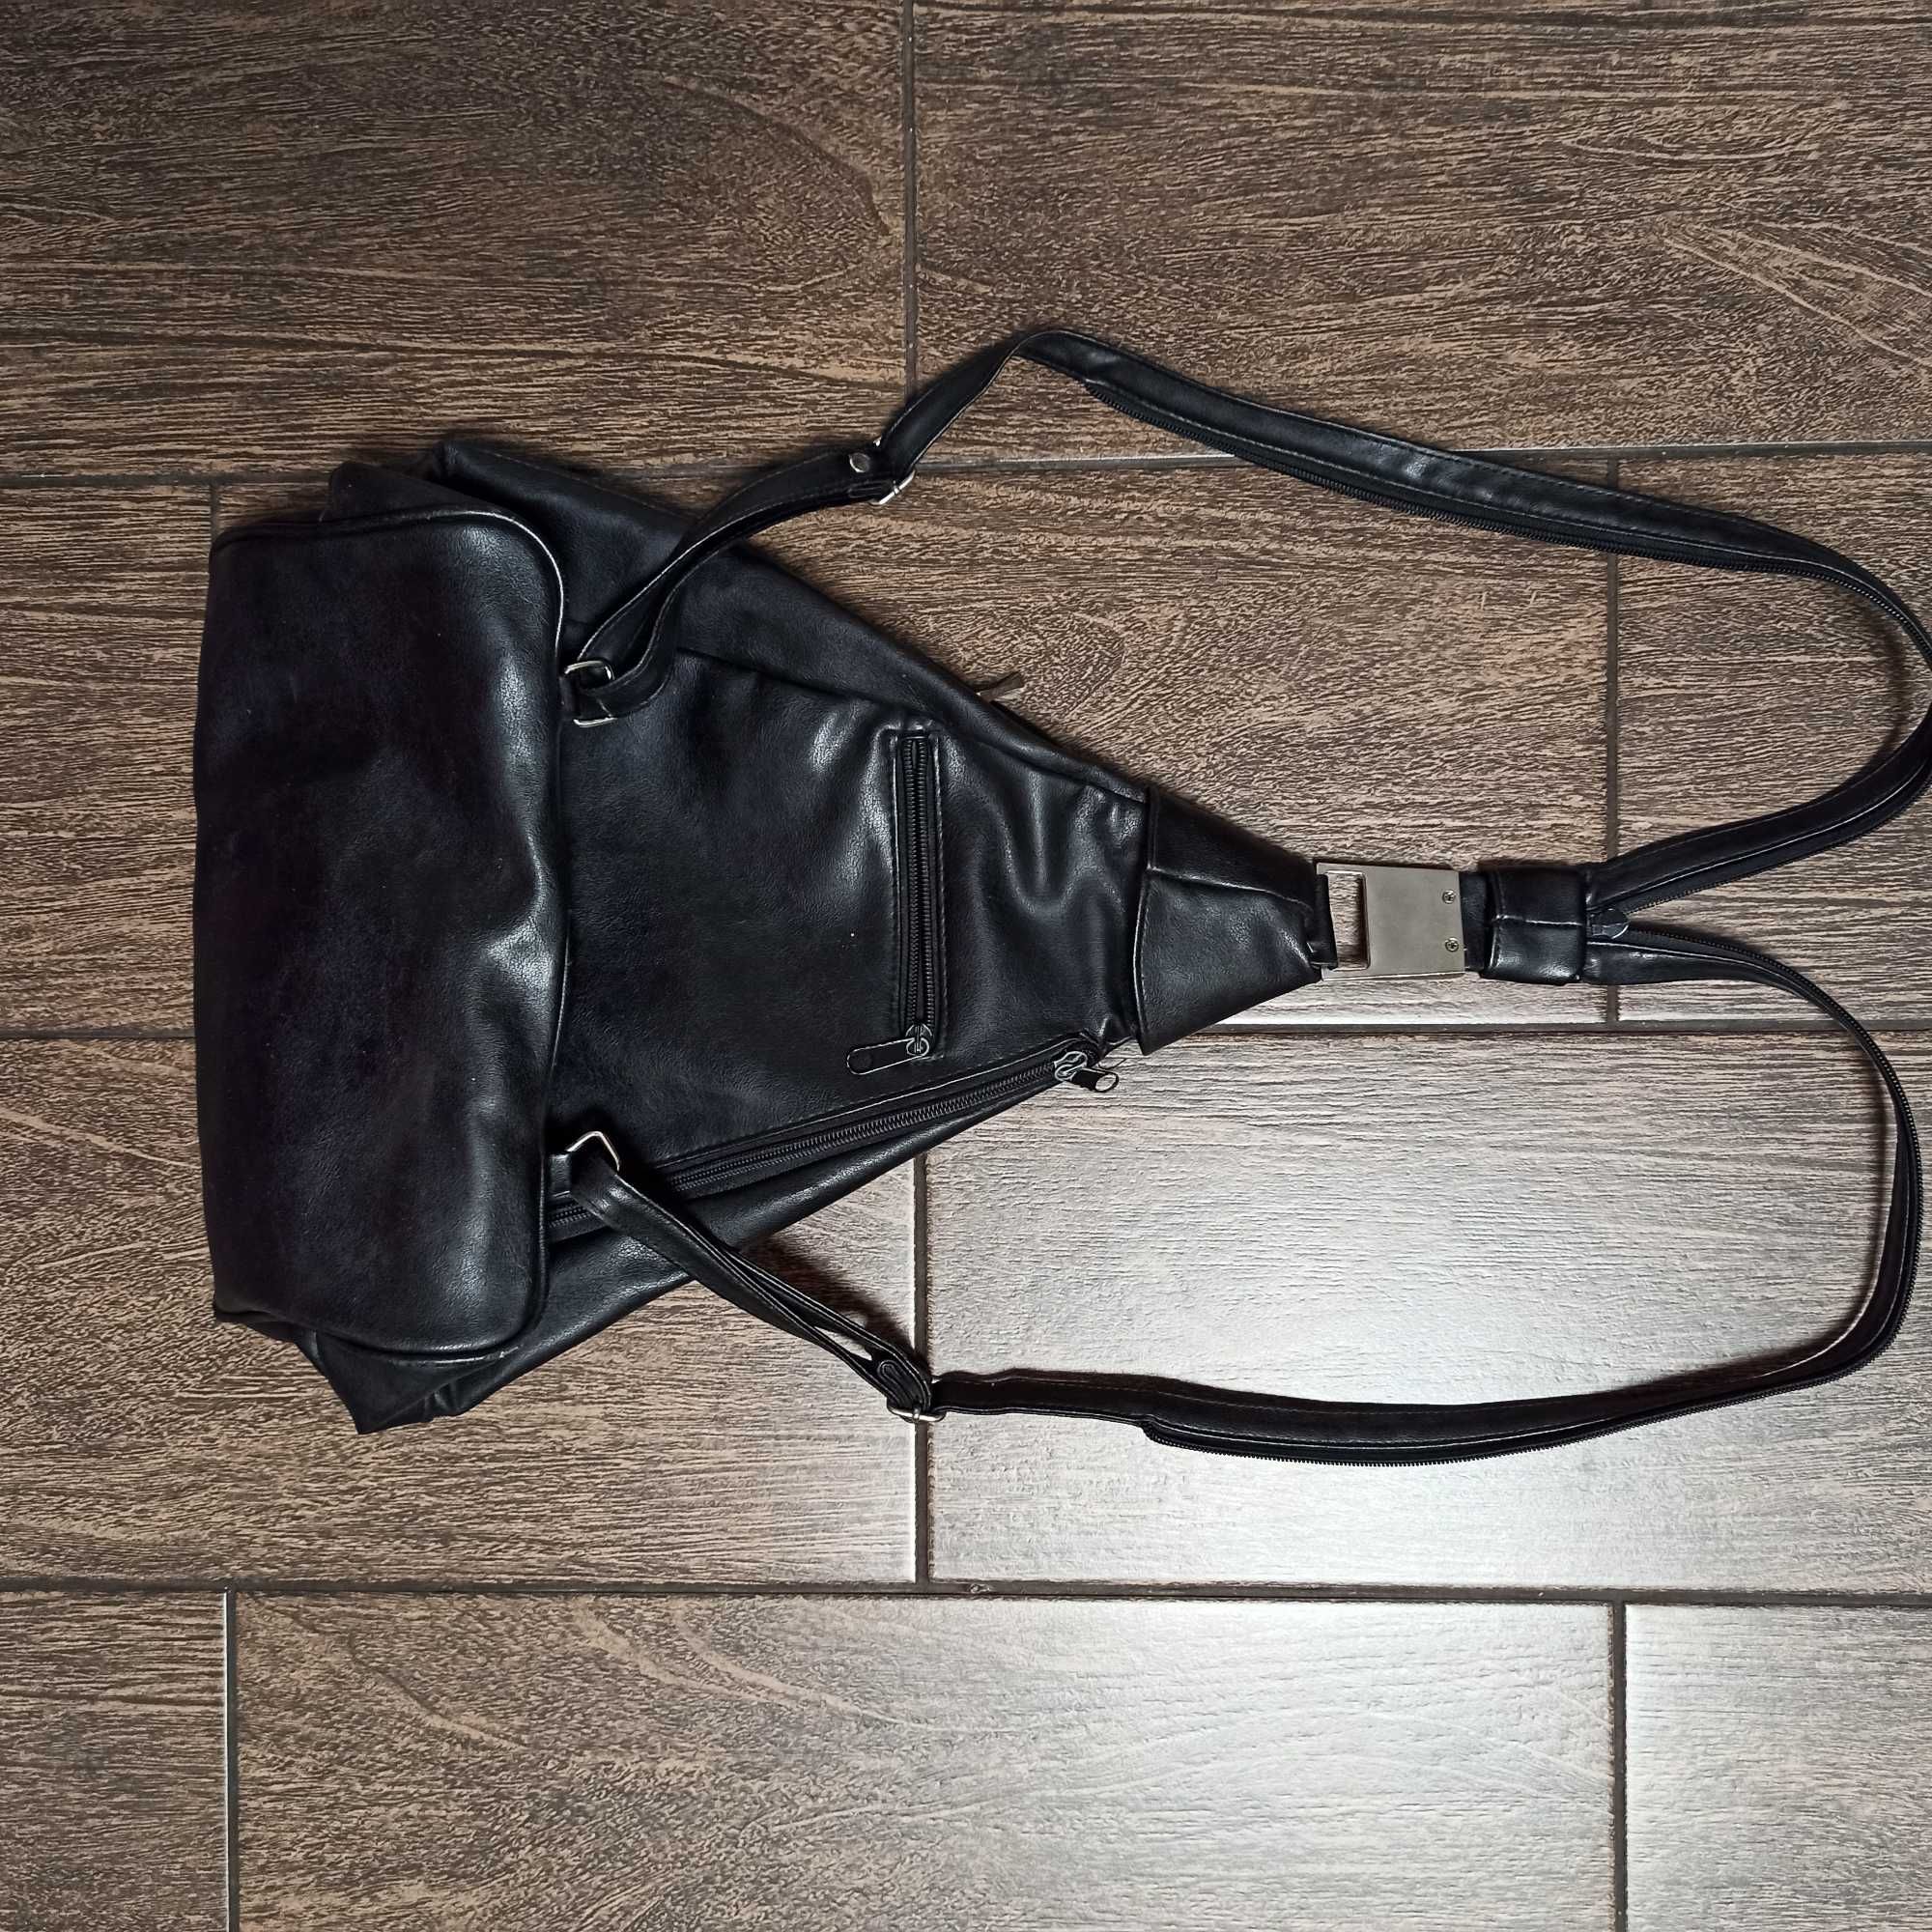 Фирменный рюкзак Es-Carte женский эко кожа сумка Германия! Оригинал!